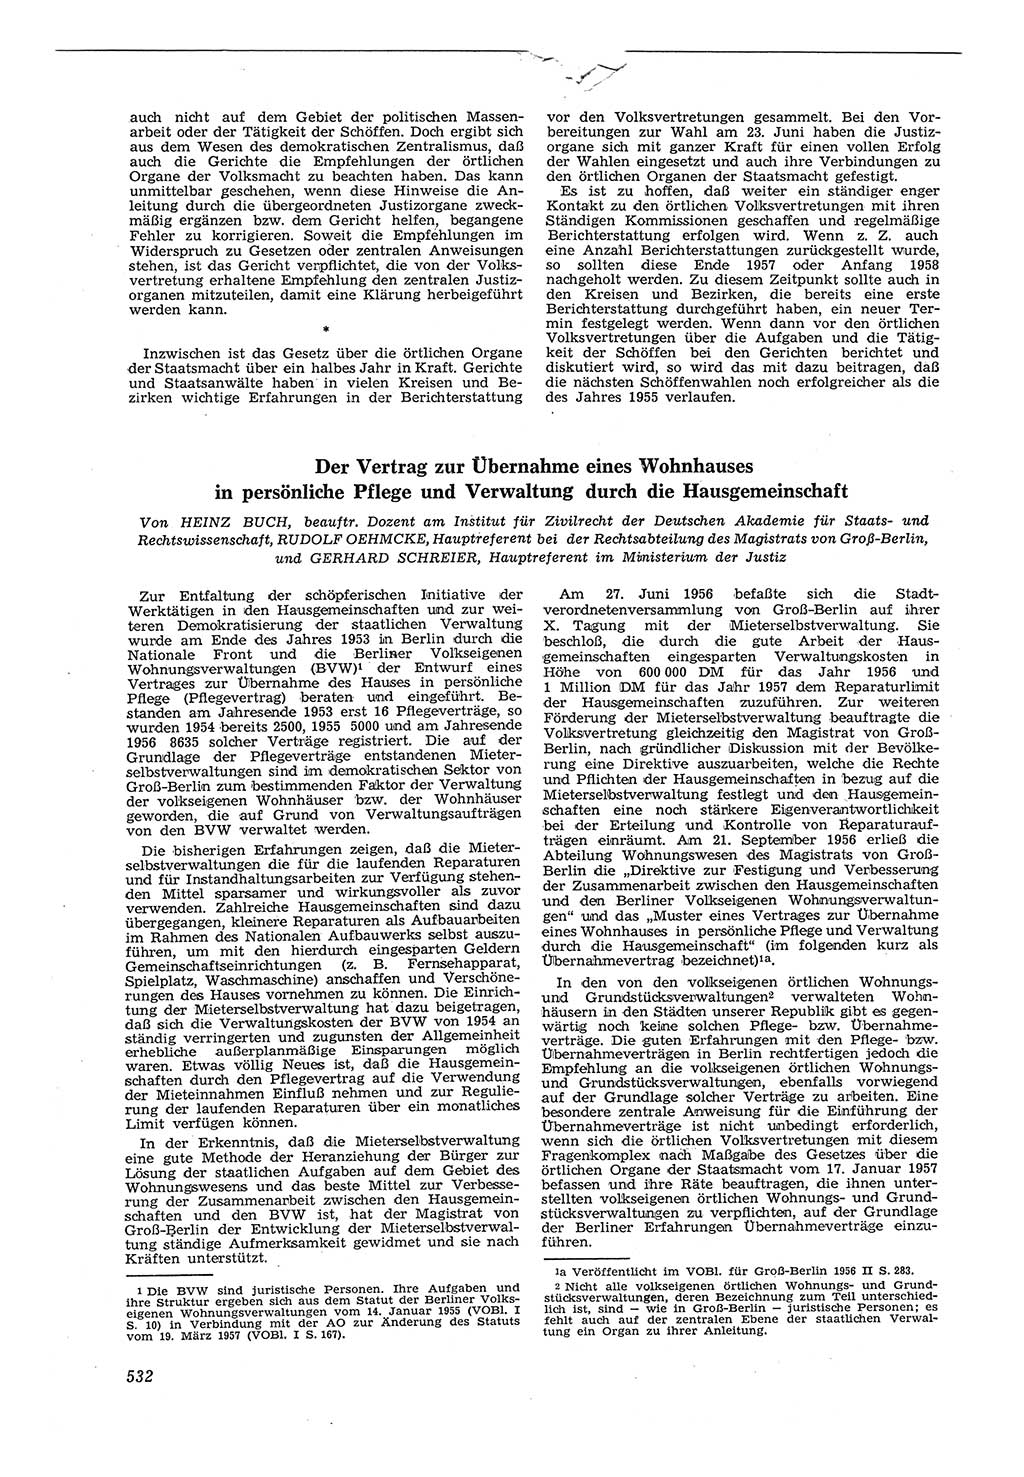 Neue Justiz (NJ), Zeitschrift für Recht und Rechtswissenschaft [Deutsche Demokratische Republik (DDR)], 11. Jahrgang 1957, Seite 532 (NJ DDR 1957, S. 532)